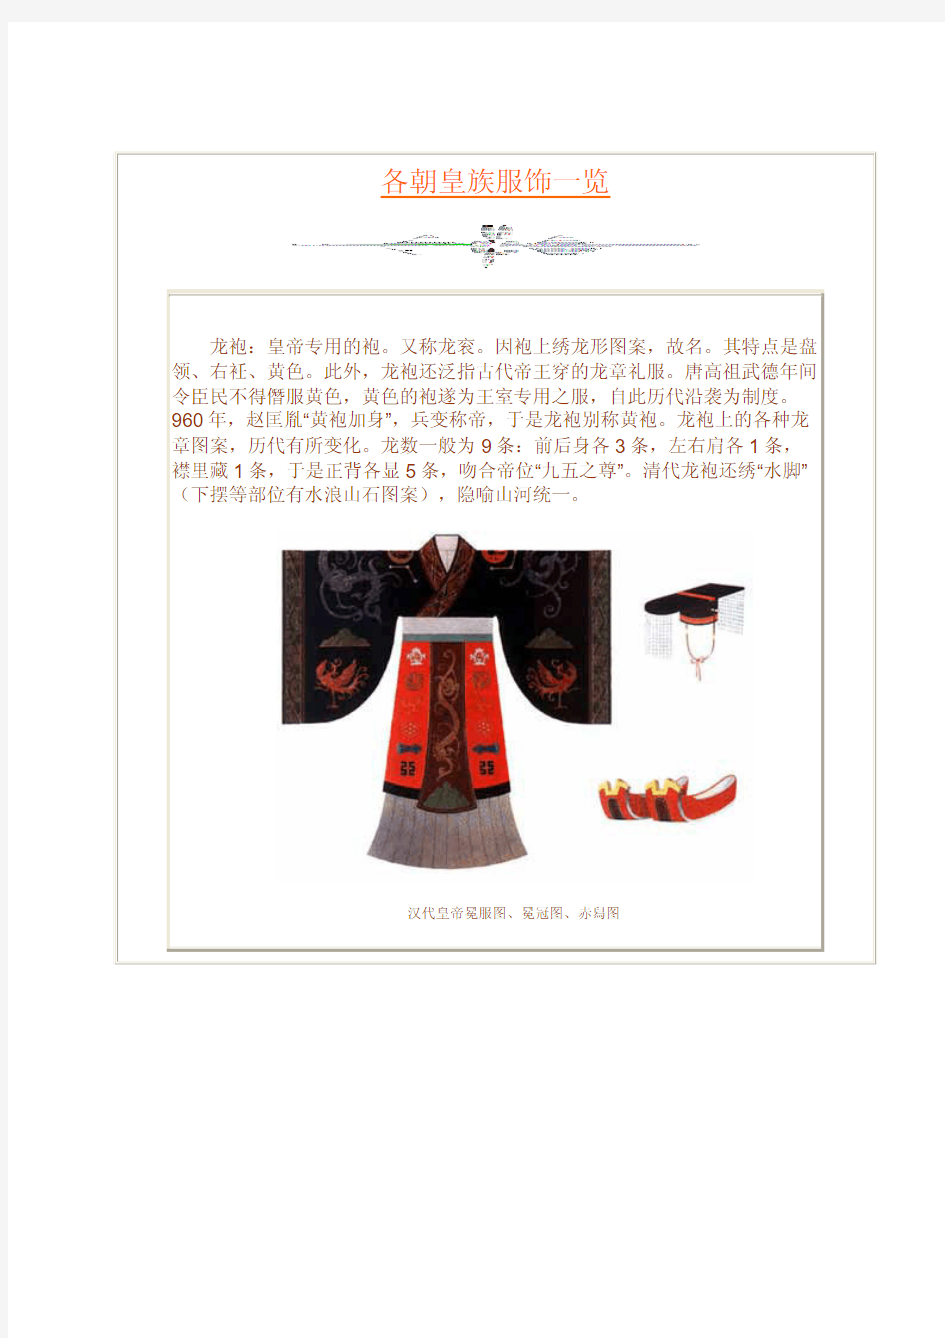 【历史文化】中国历朝皇族服饰一览